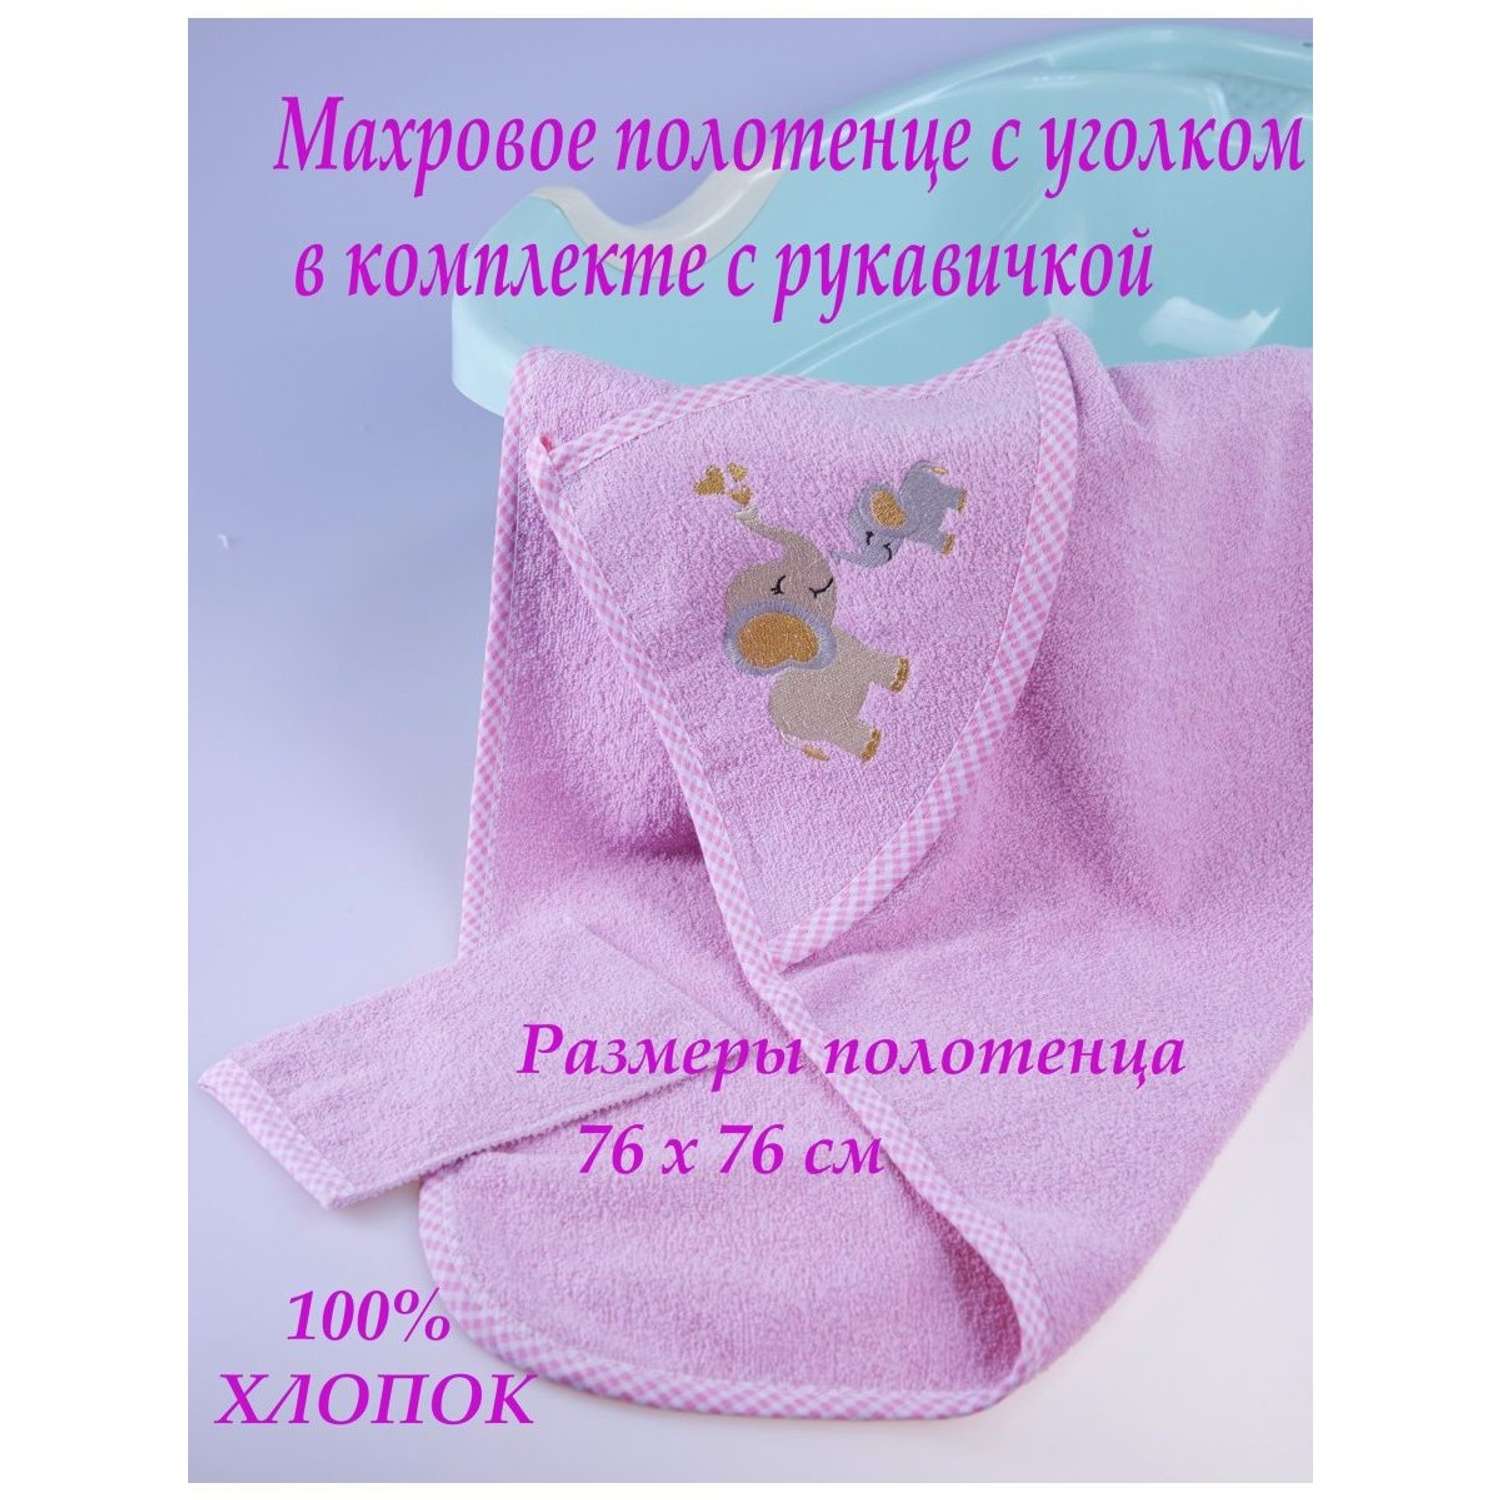 Набор для купания малыша M-BABY махровое полотенце с уголком и рукавичка 100% хлопок слоники/розовый - фото 2